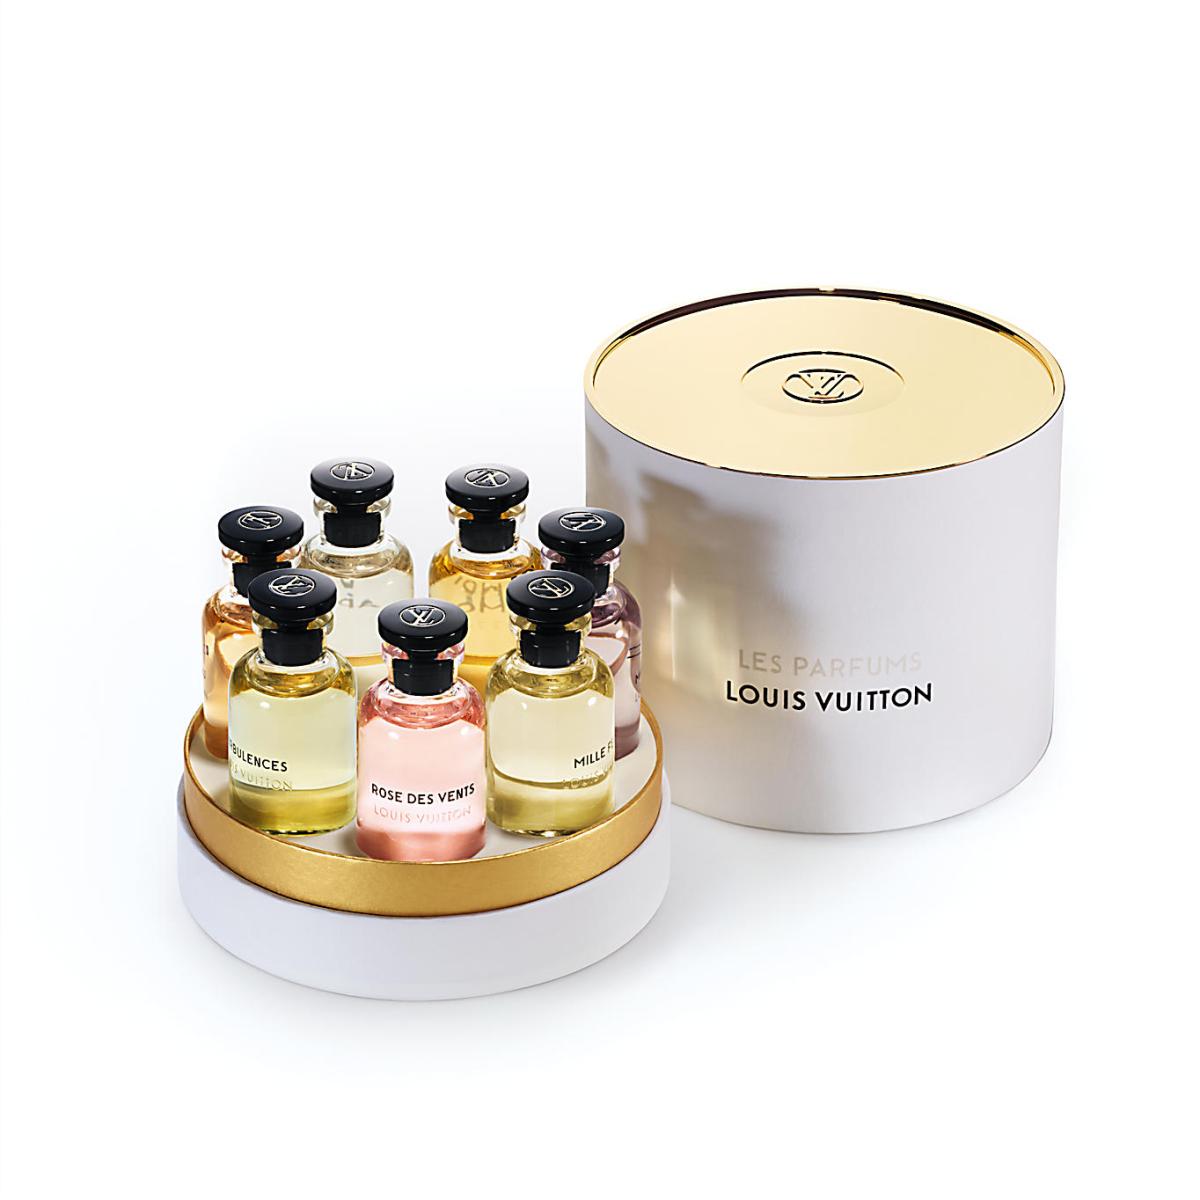 Lets talk about the Louis Vuitton Miniature Fragrance Set